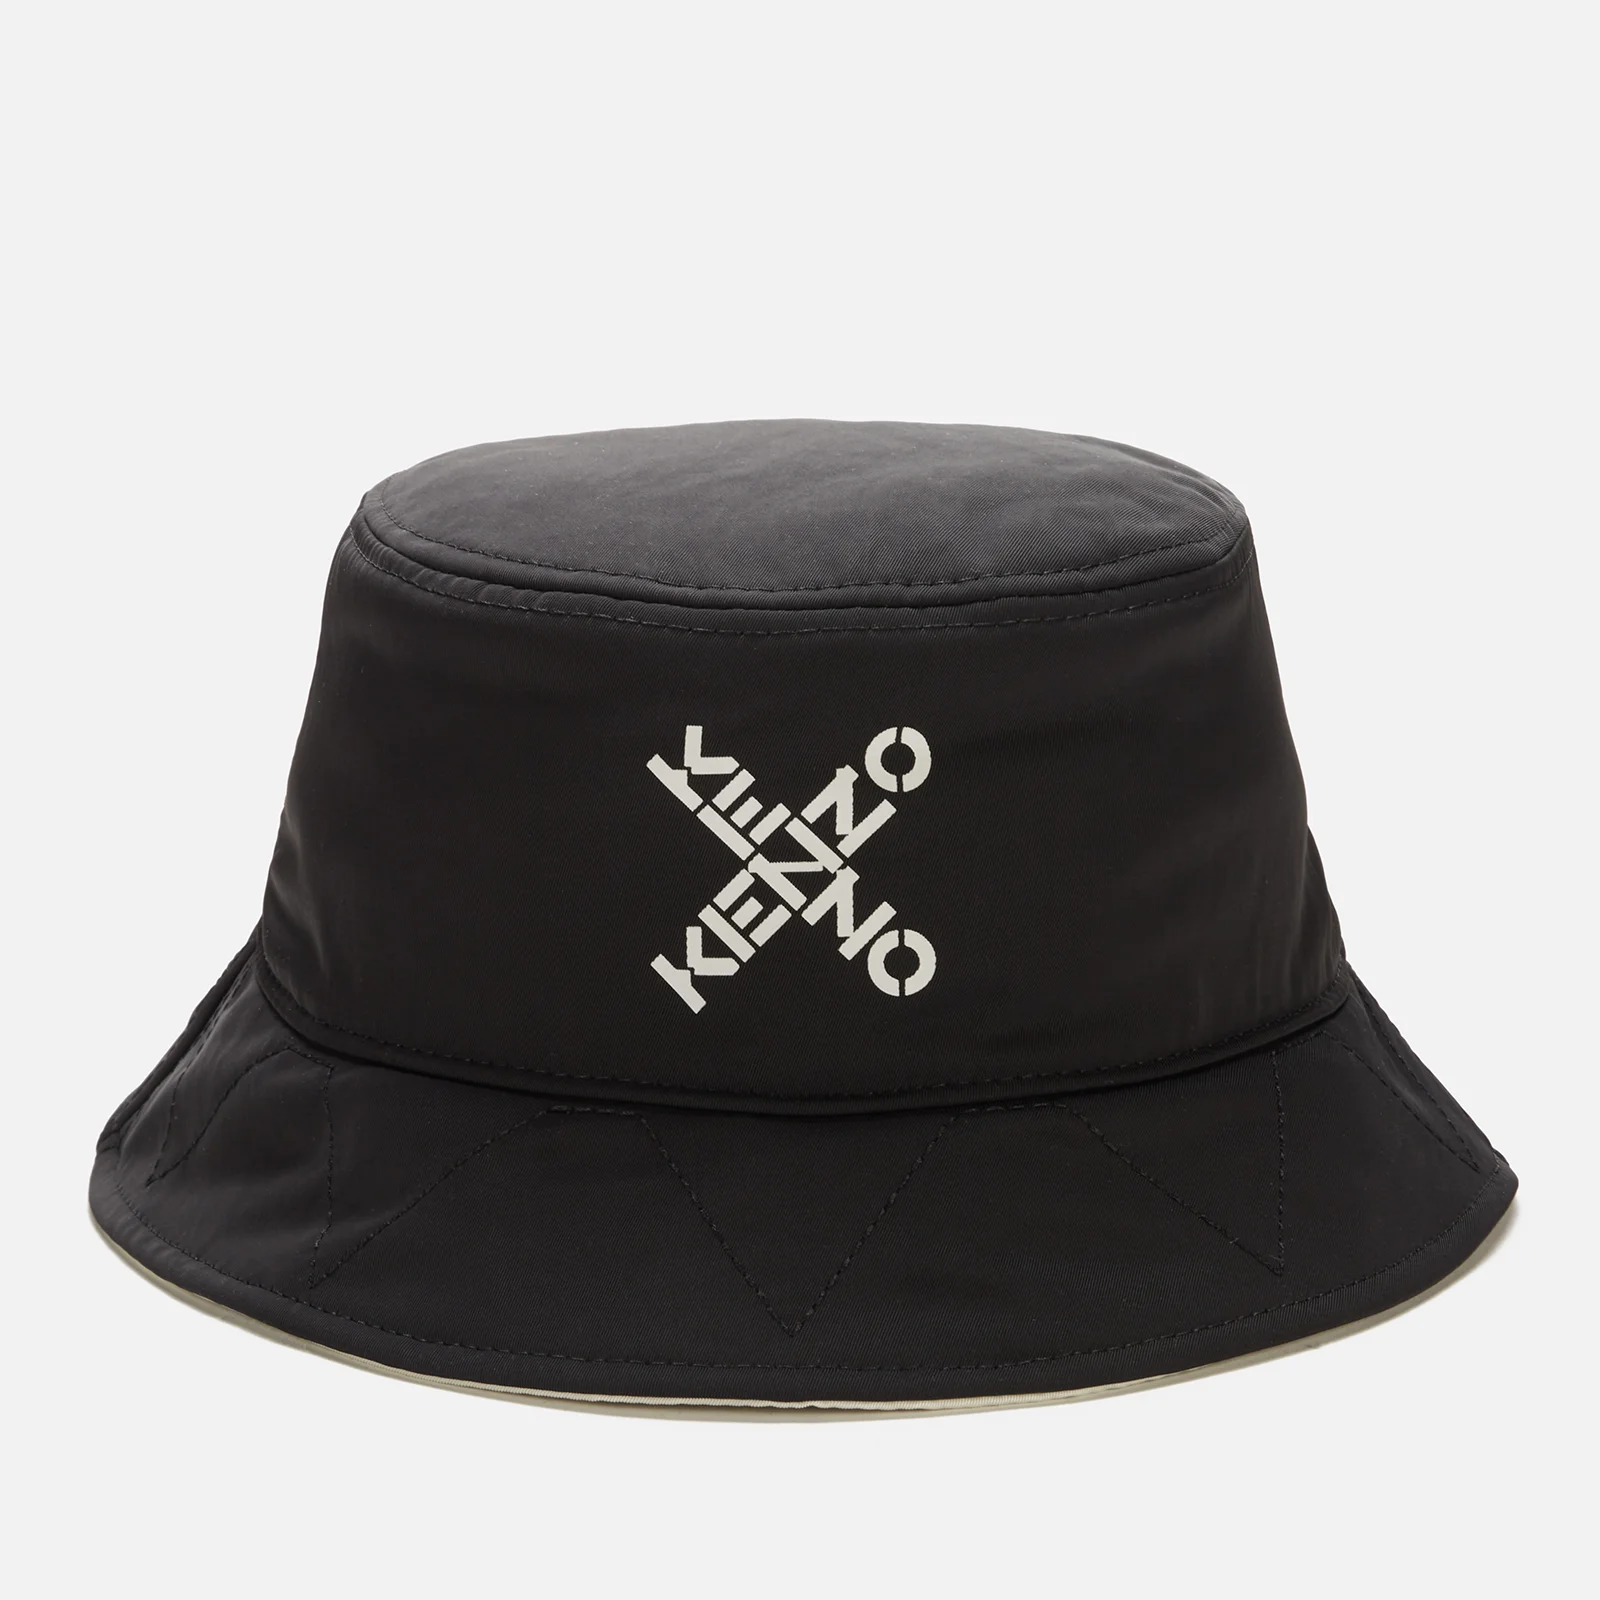 KENZO Men's Reversible Bucket Hat - Black Image 1